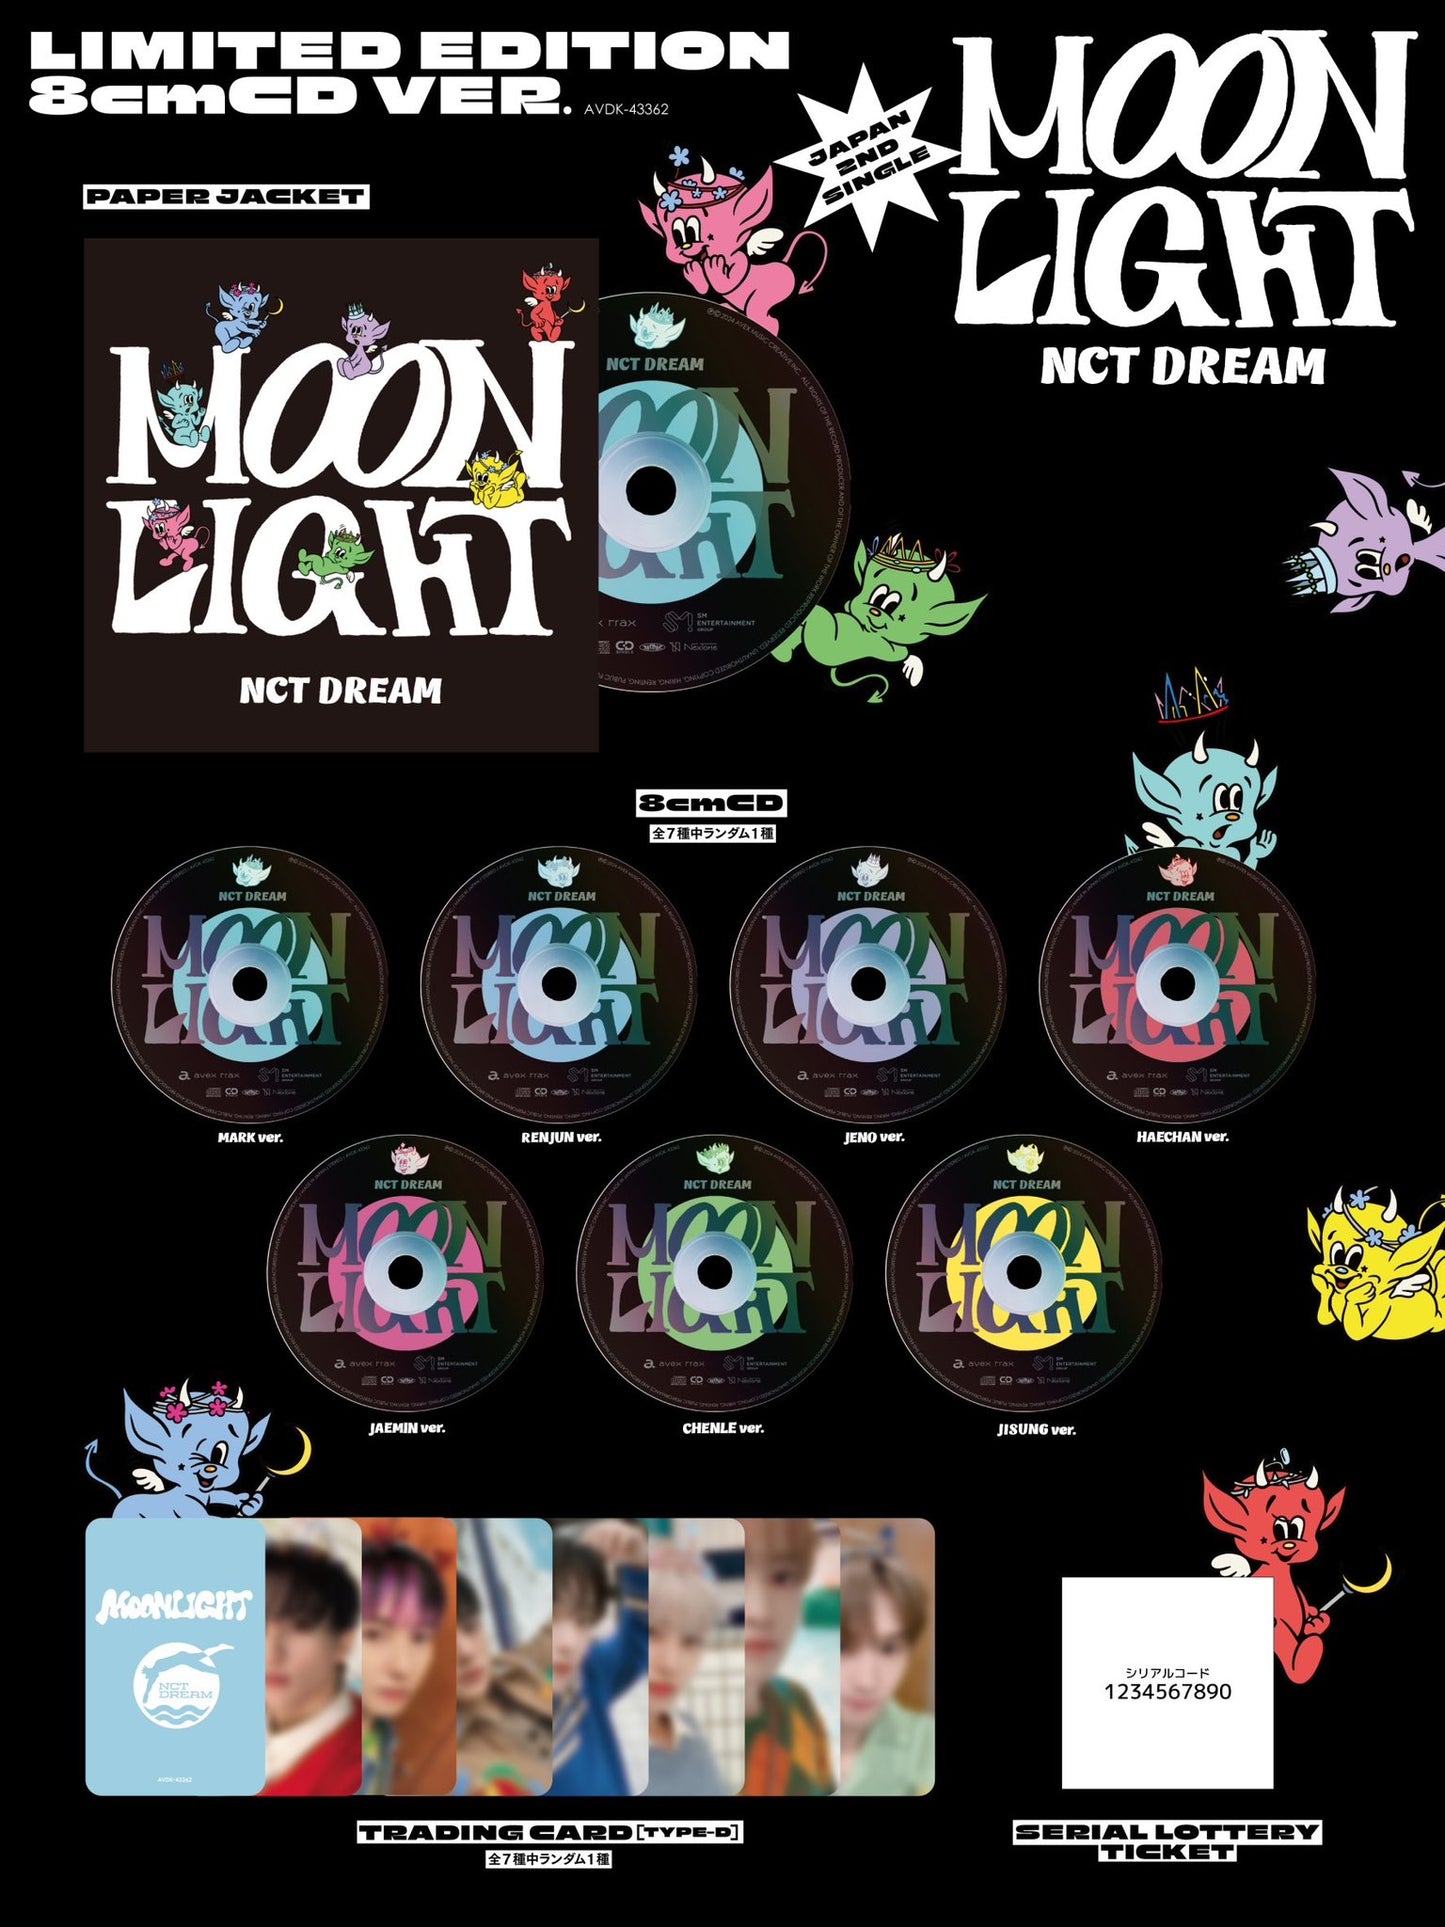 [PRE ORDER] NCT DREAM - [Moonlight ] (8cmCD Ed.)